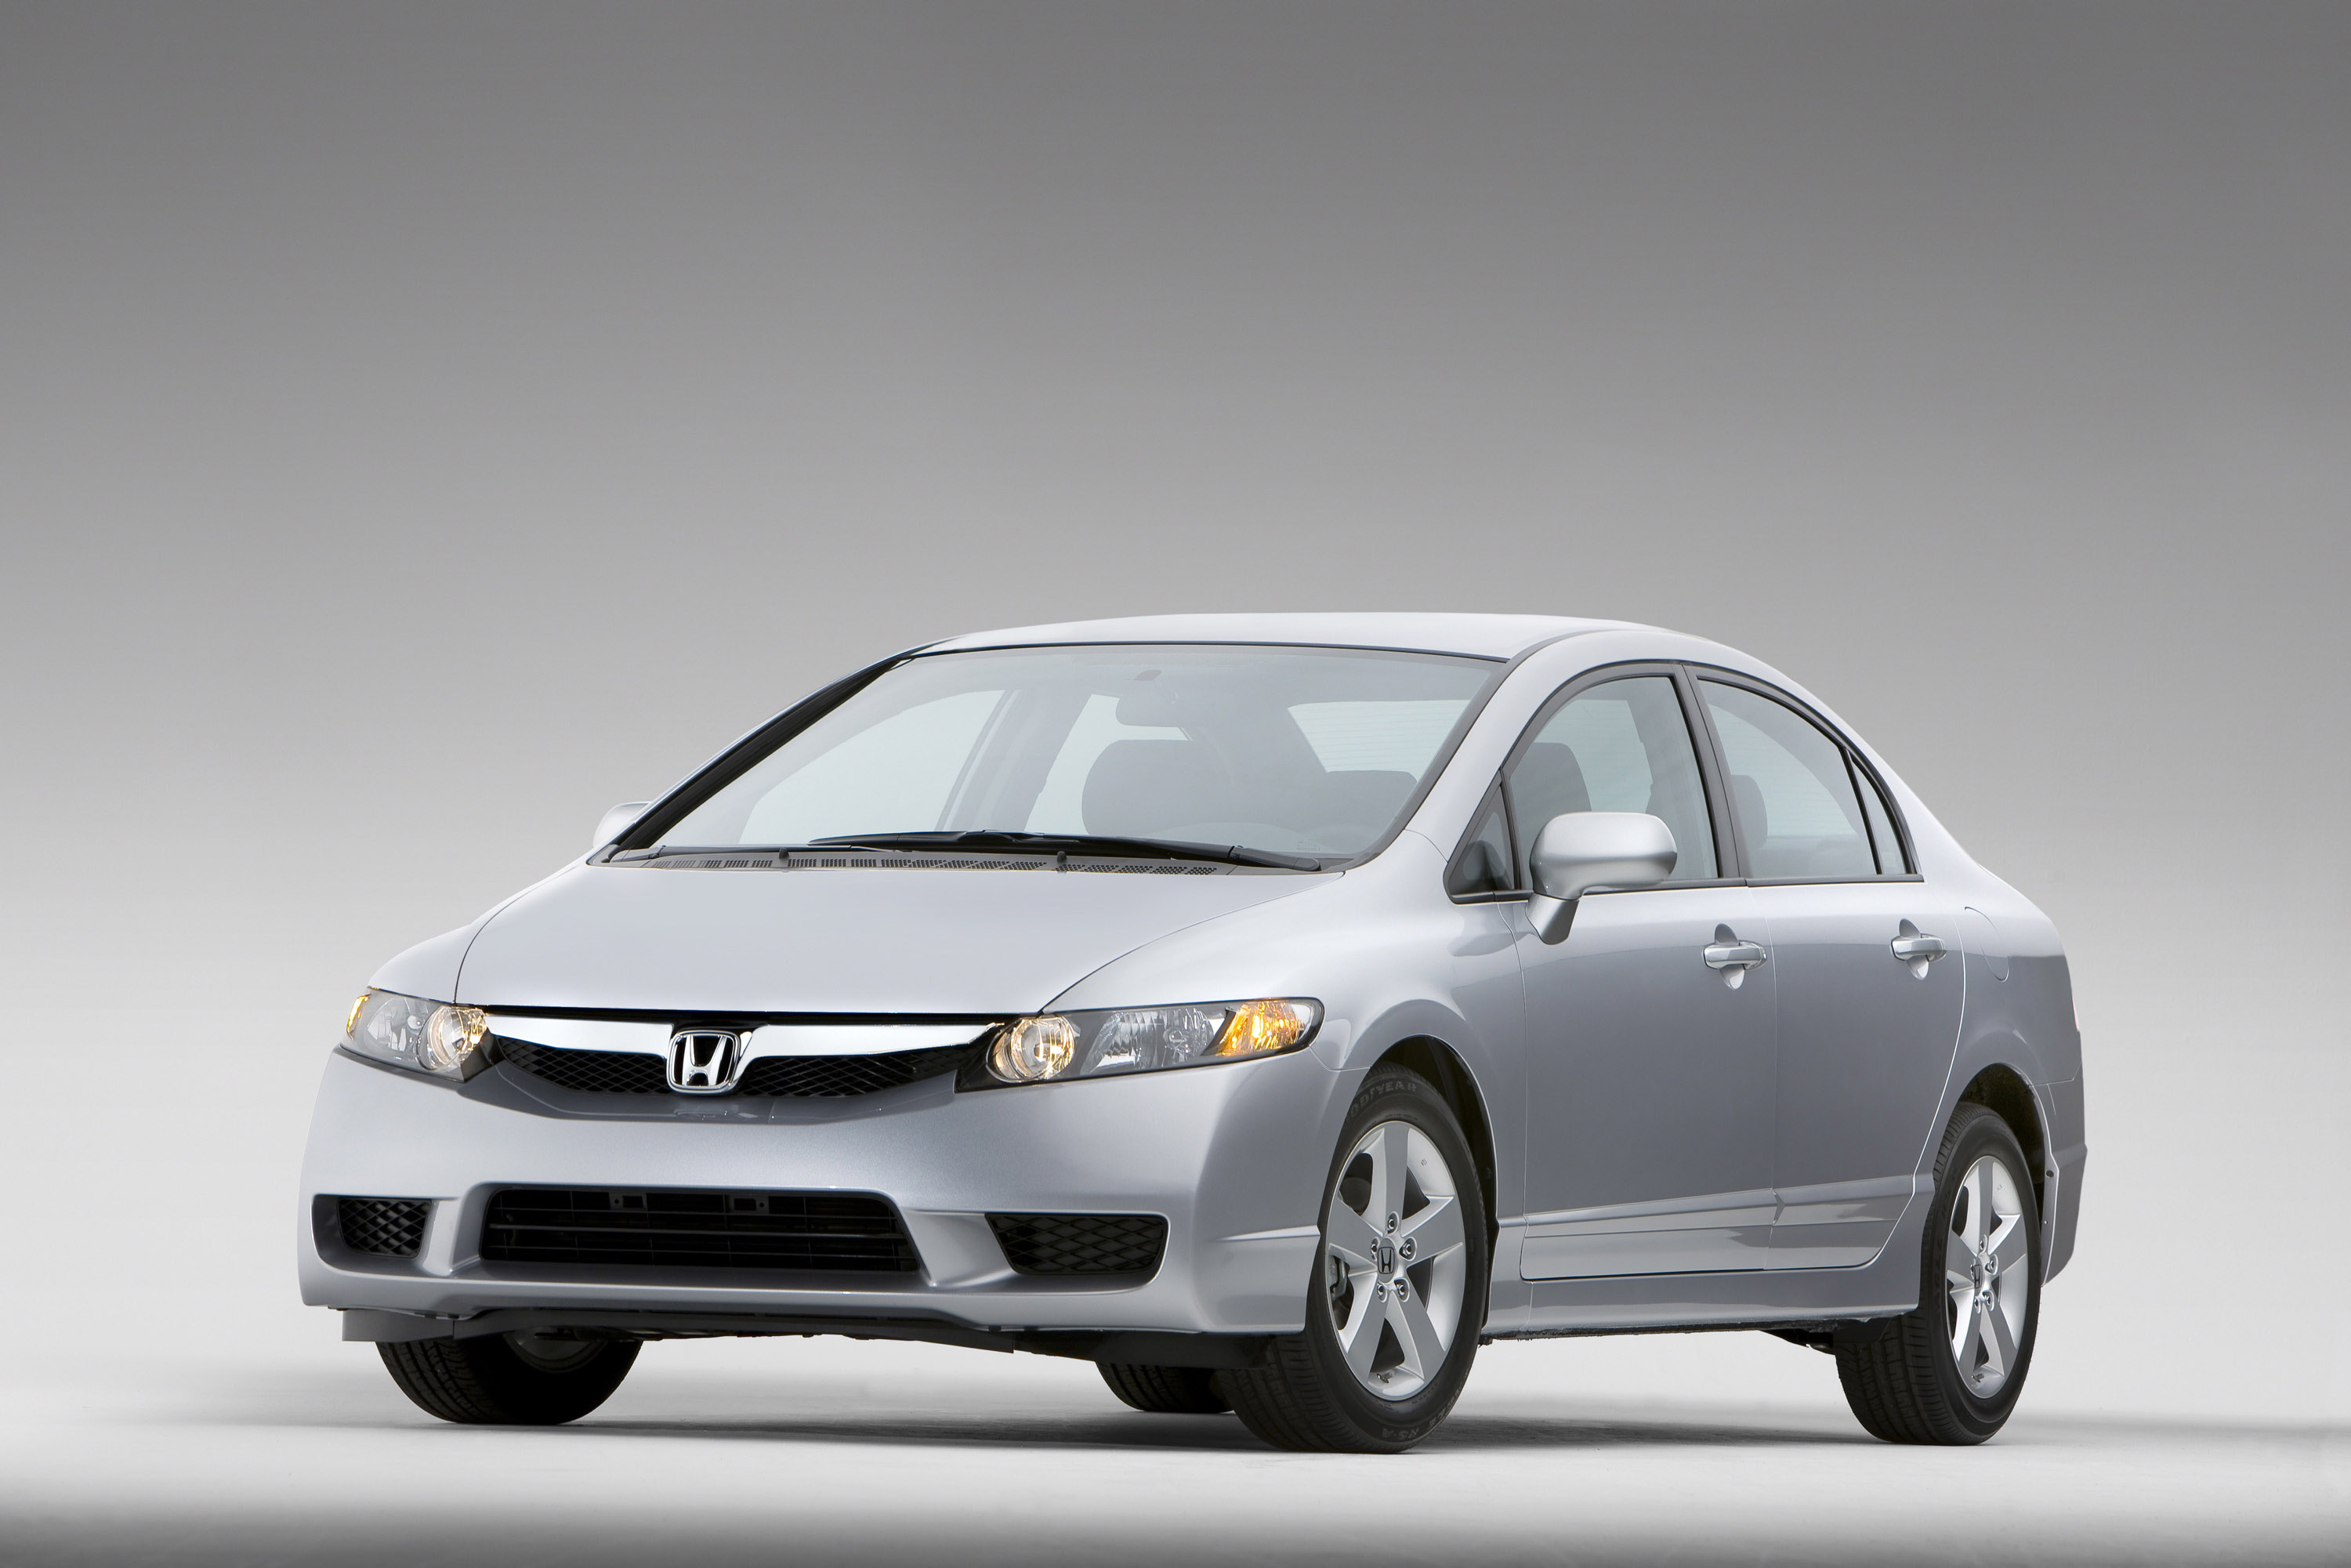 2009 Honda Civic Sedan HD Pictures